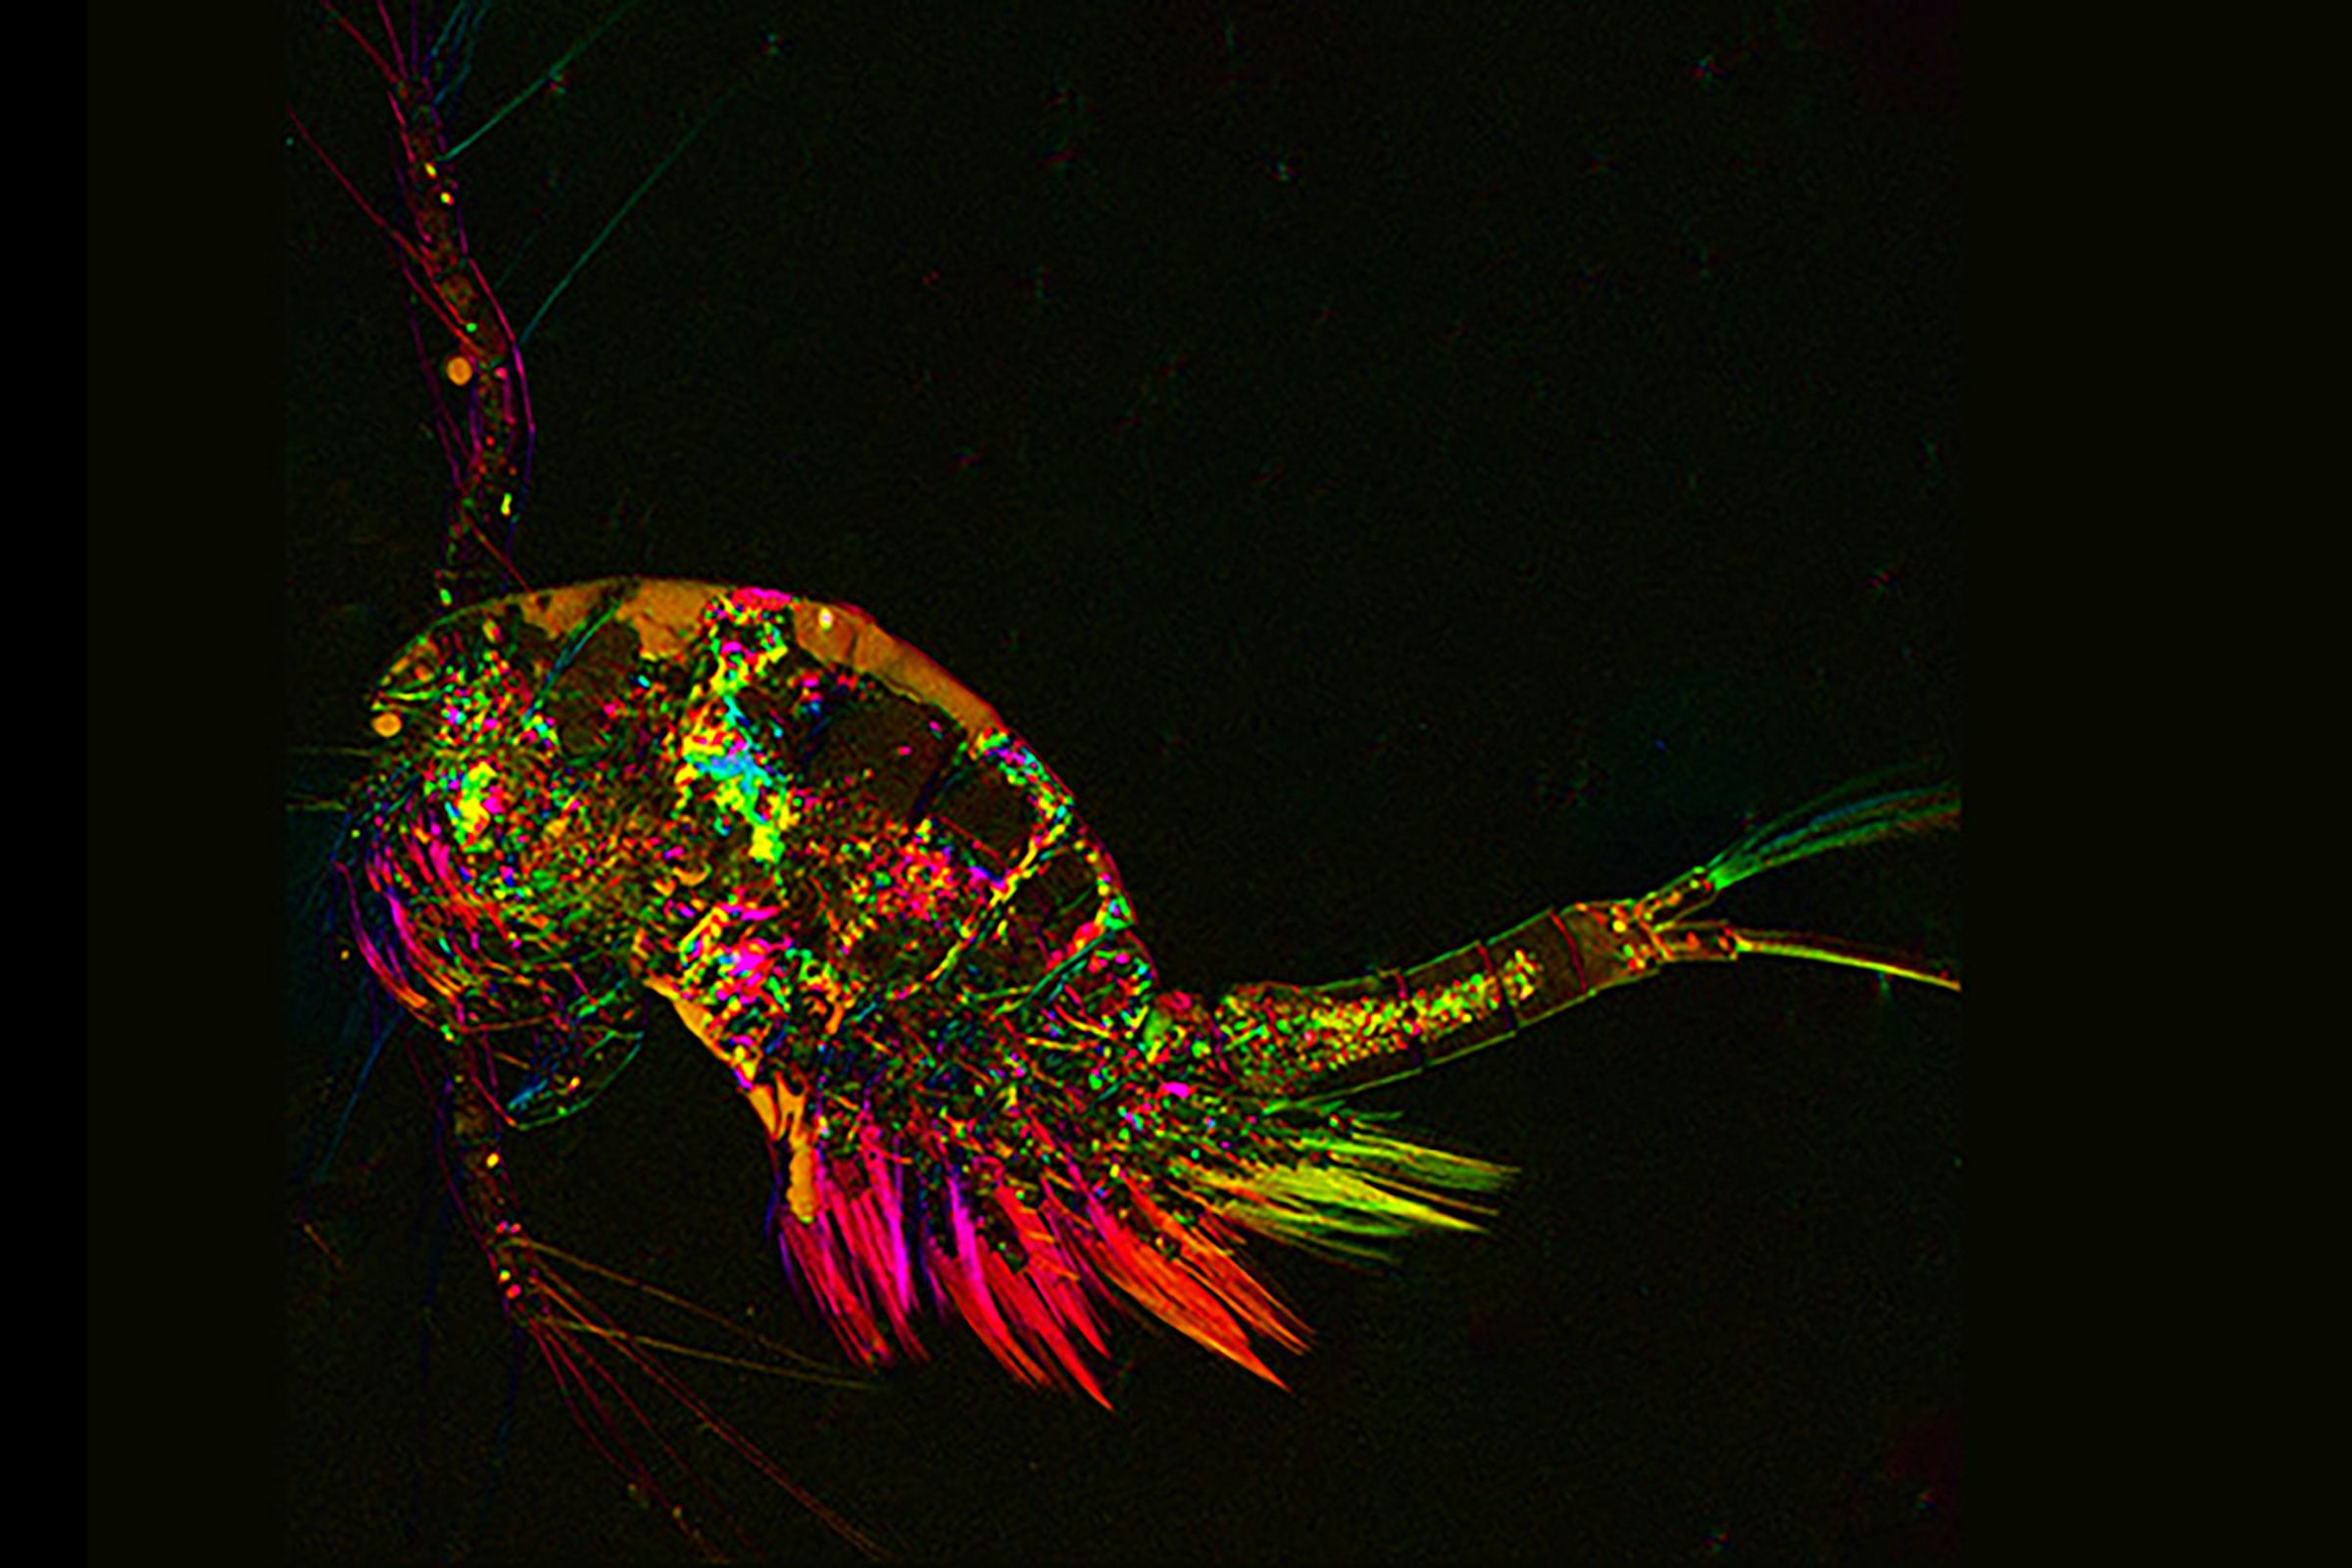 Microsope image of a colorful shrimp-like creature